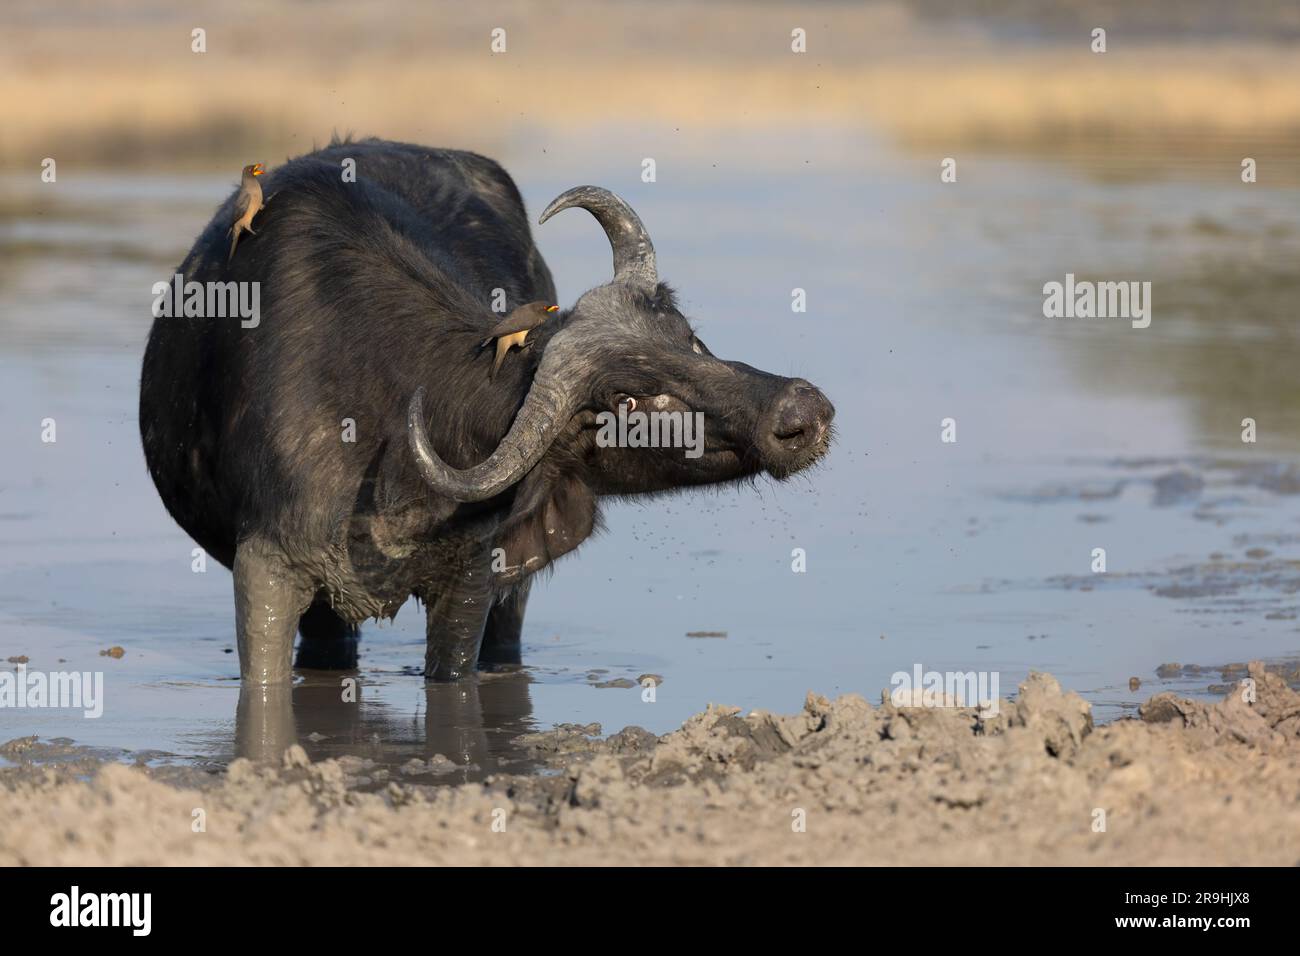 Una bufala femmina si trova nel mezzo di una pozza d'acqua e scuote i picchi di bue dal becco giallo, Savute, Chobe National Park, Botswana, Africa Foto Stock